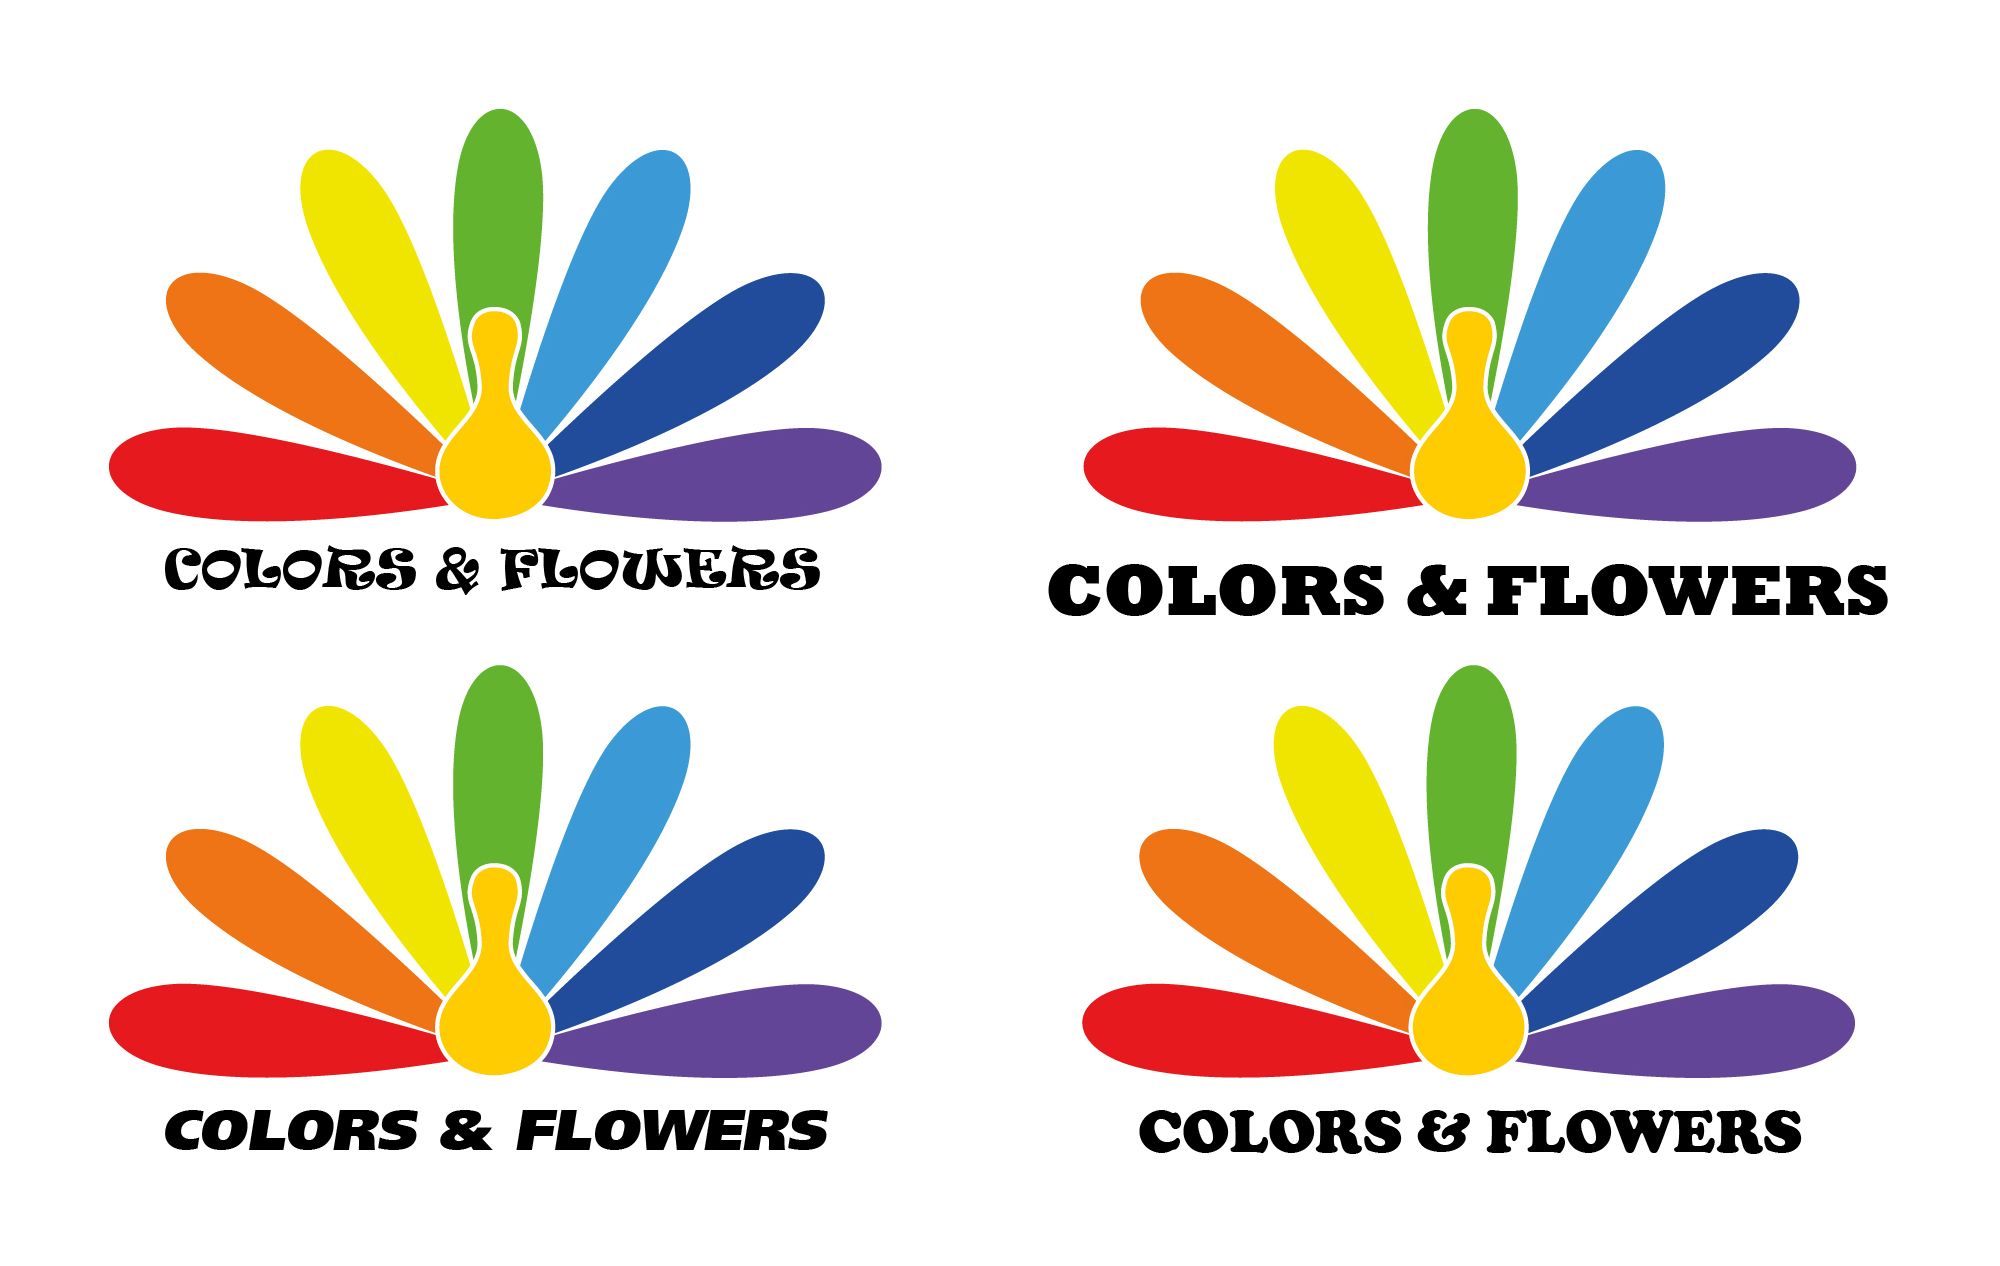 Colors & Flowers Логотип и фирменный стиль - дизайнер tourtle